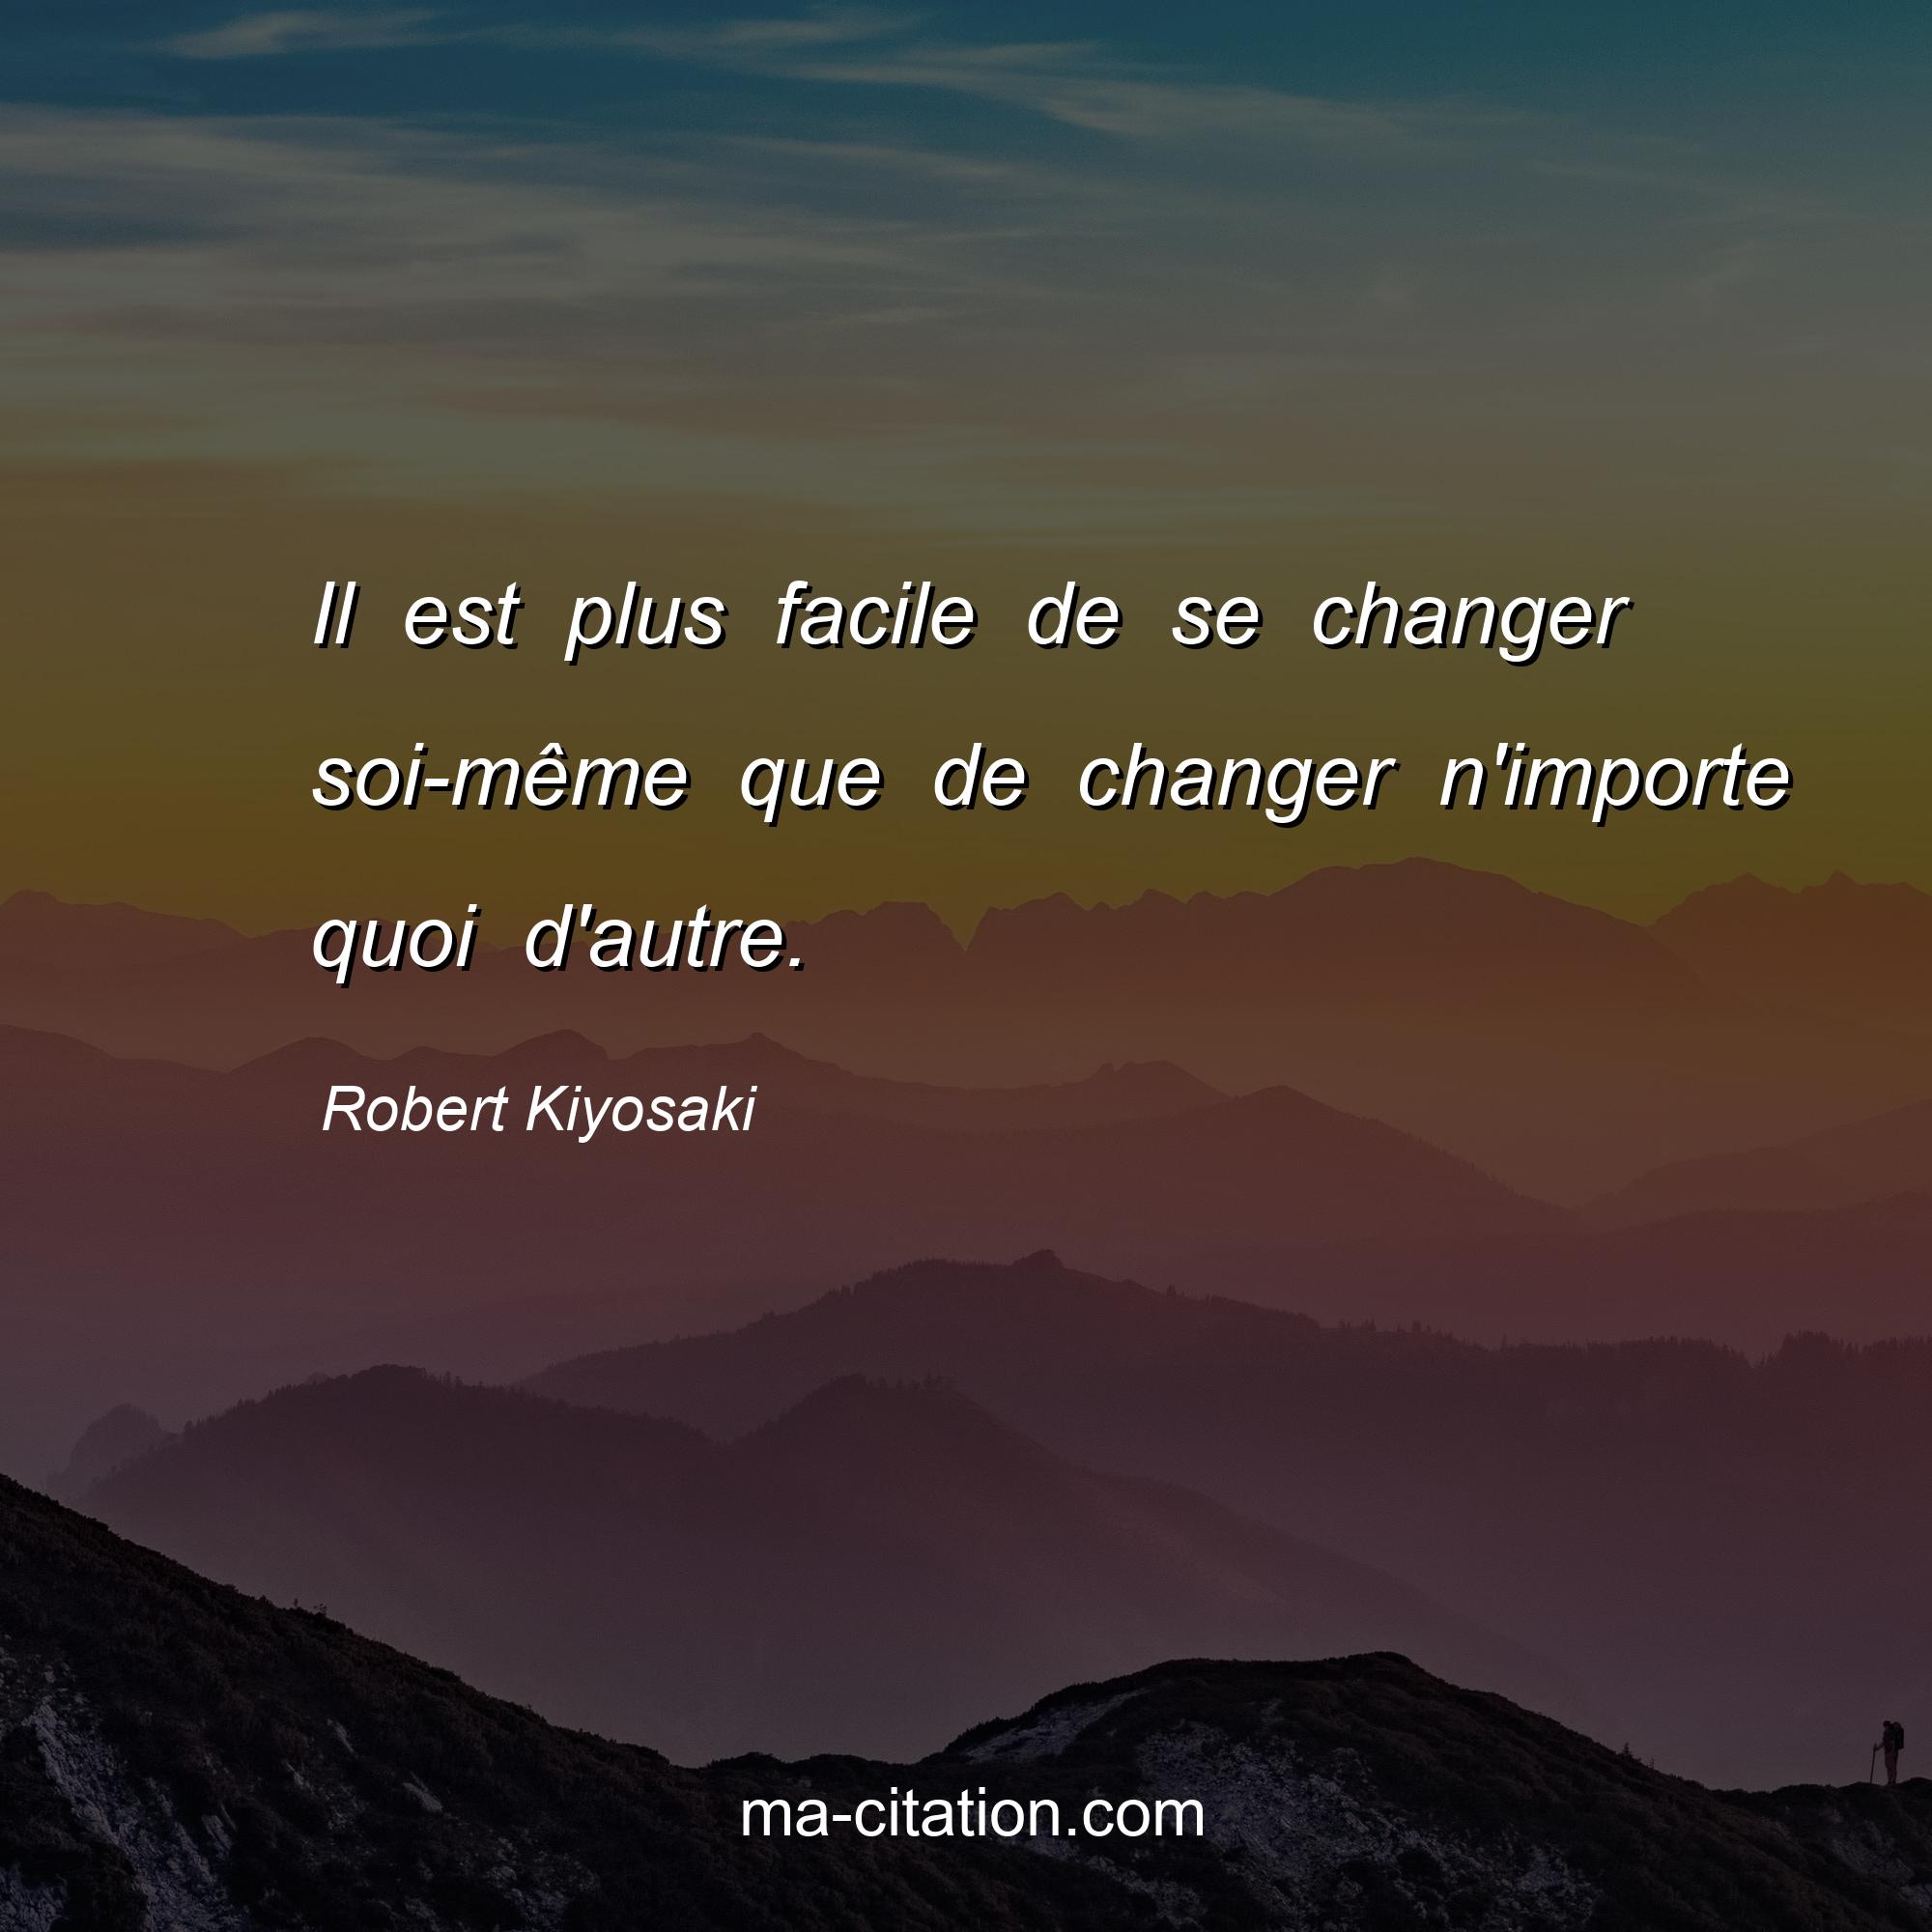 Robert Kiyosaki : Il est plus facile de se changer soi-même que de changer n'importe quoi d'autre.